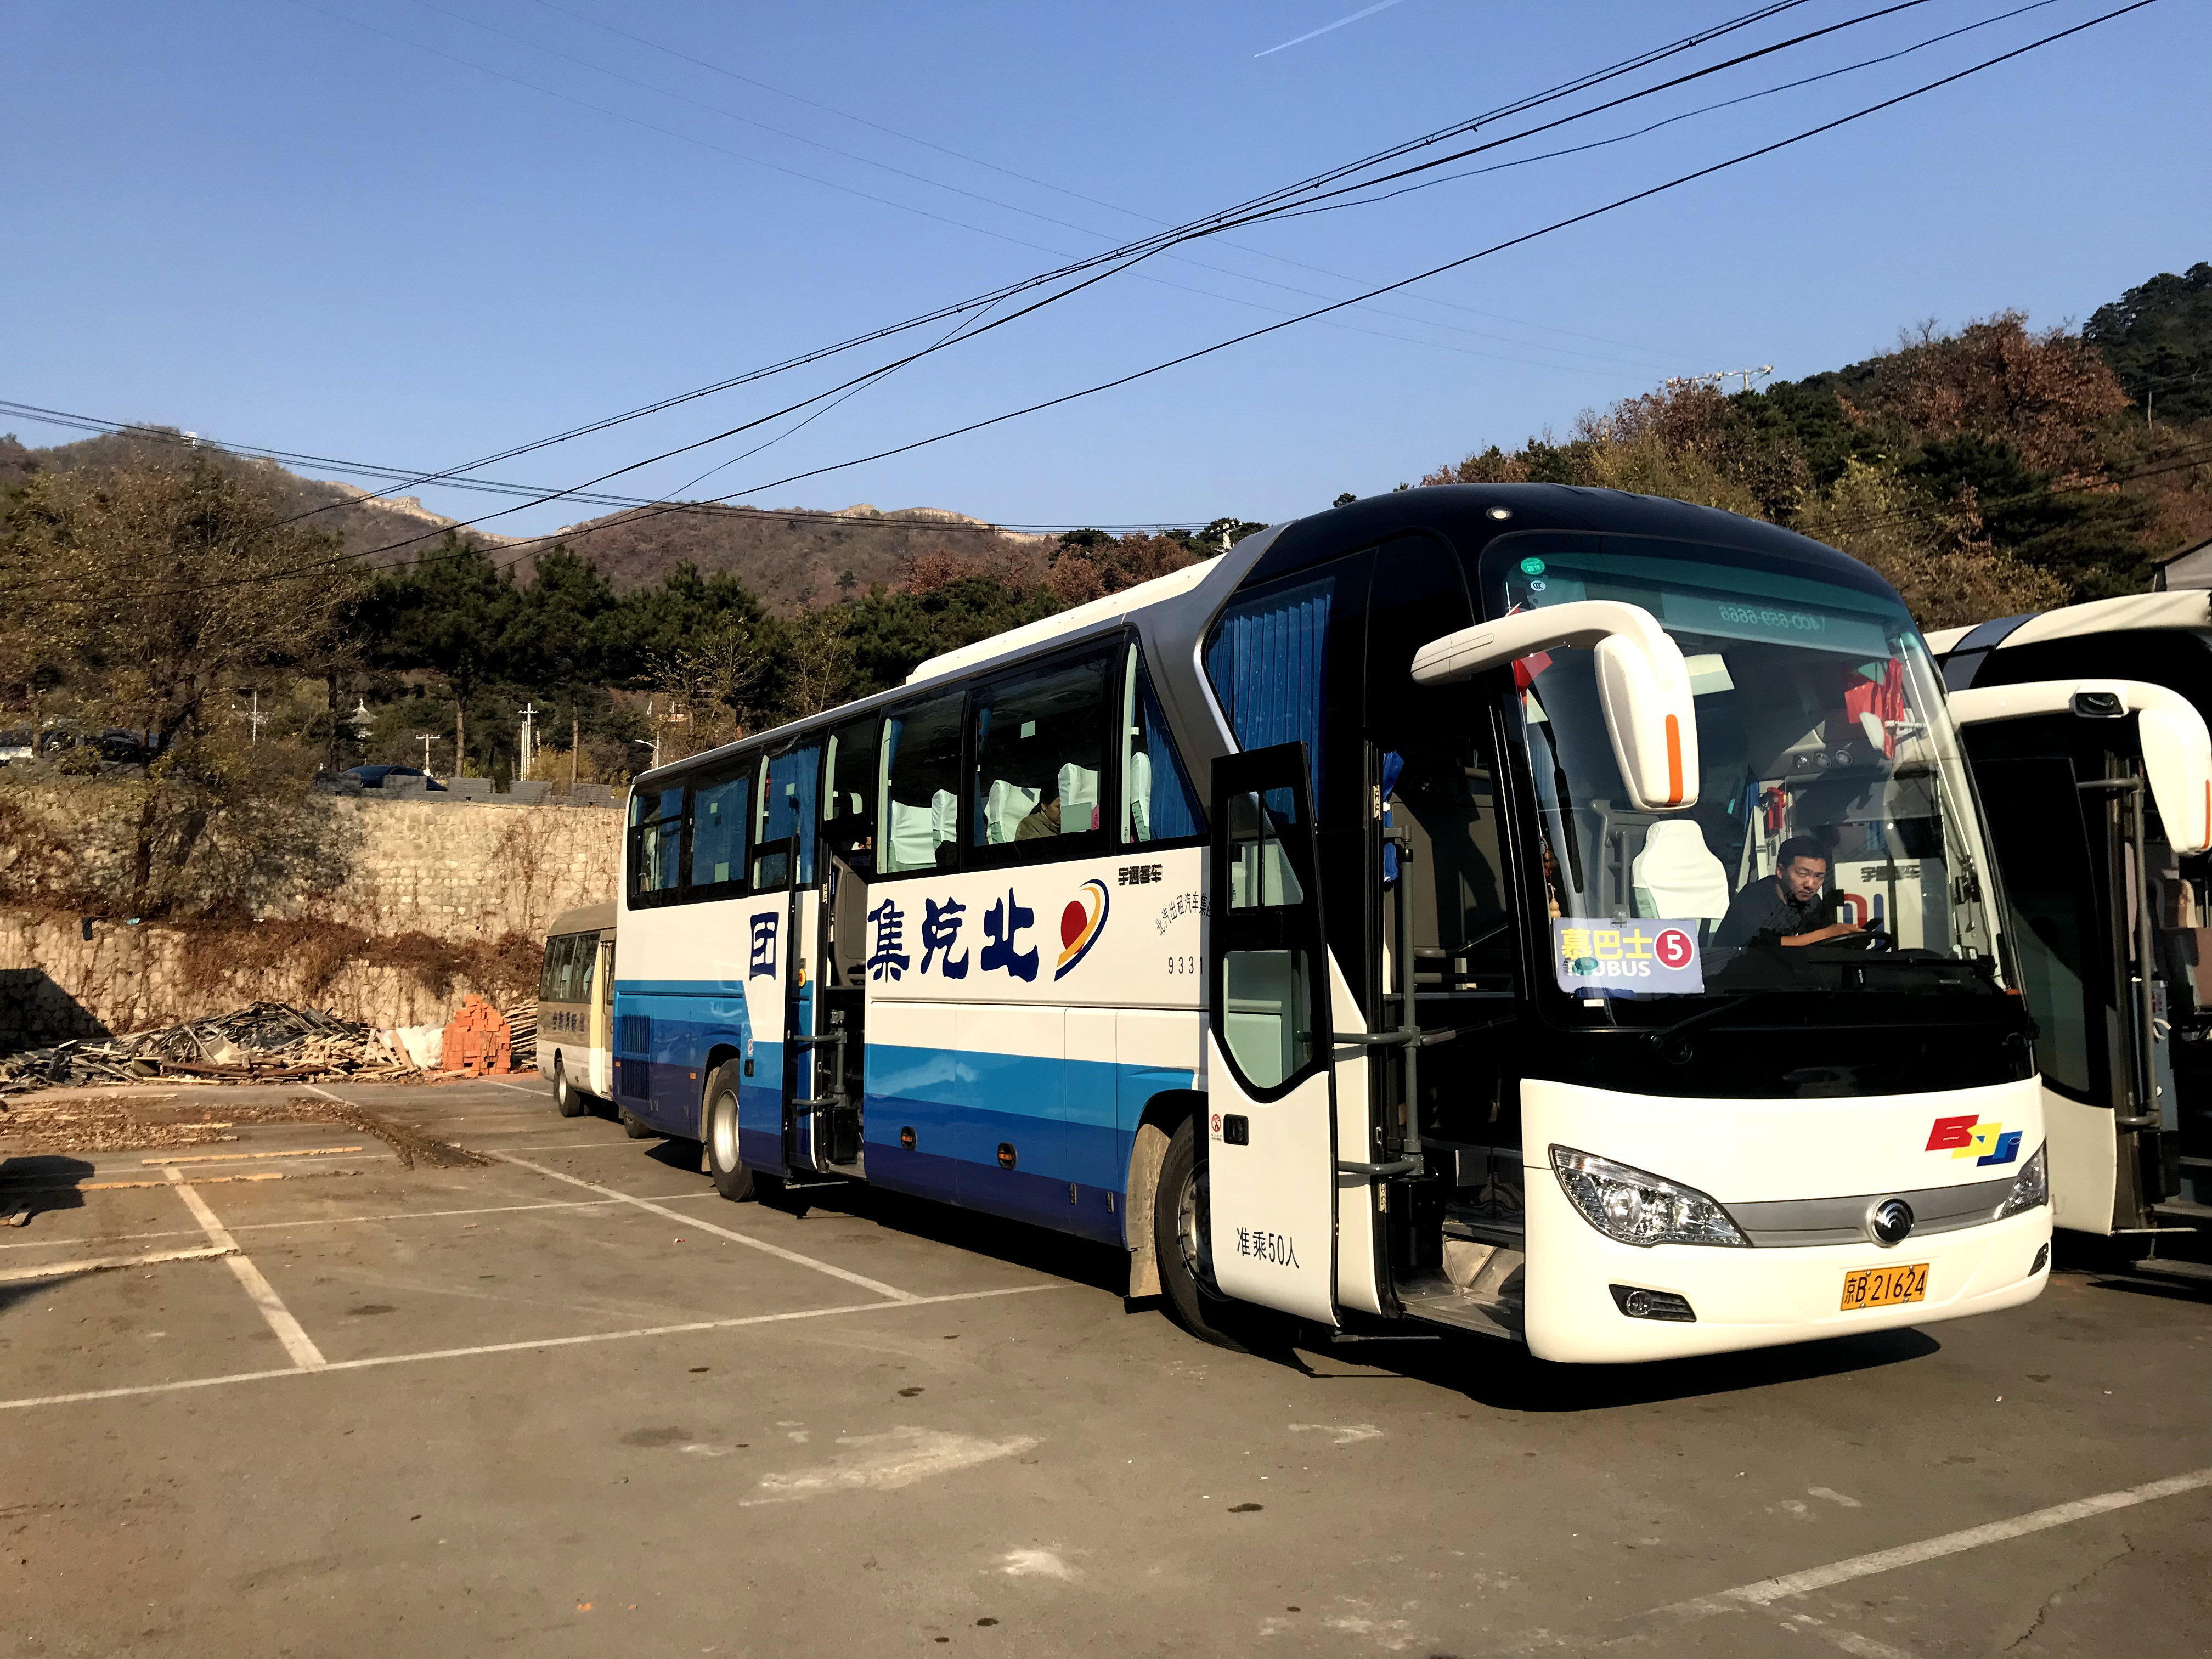 Экскурсионный автобус, один из самых простых способов увидеть Великую Китайскую Стену